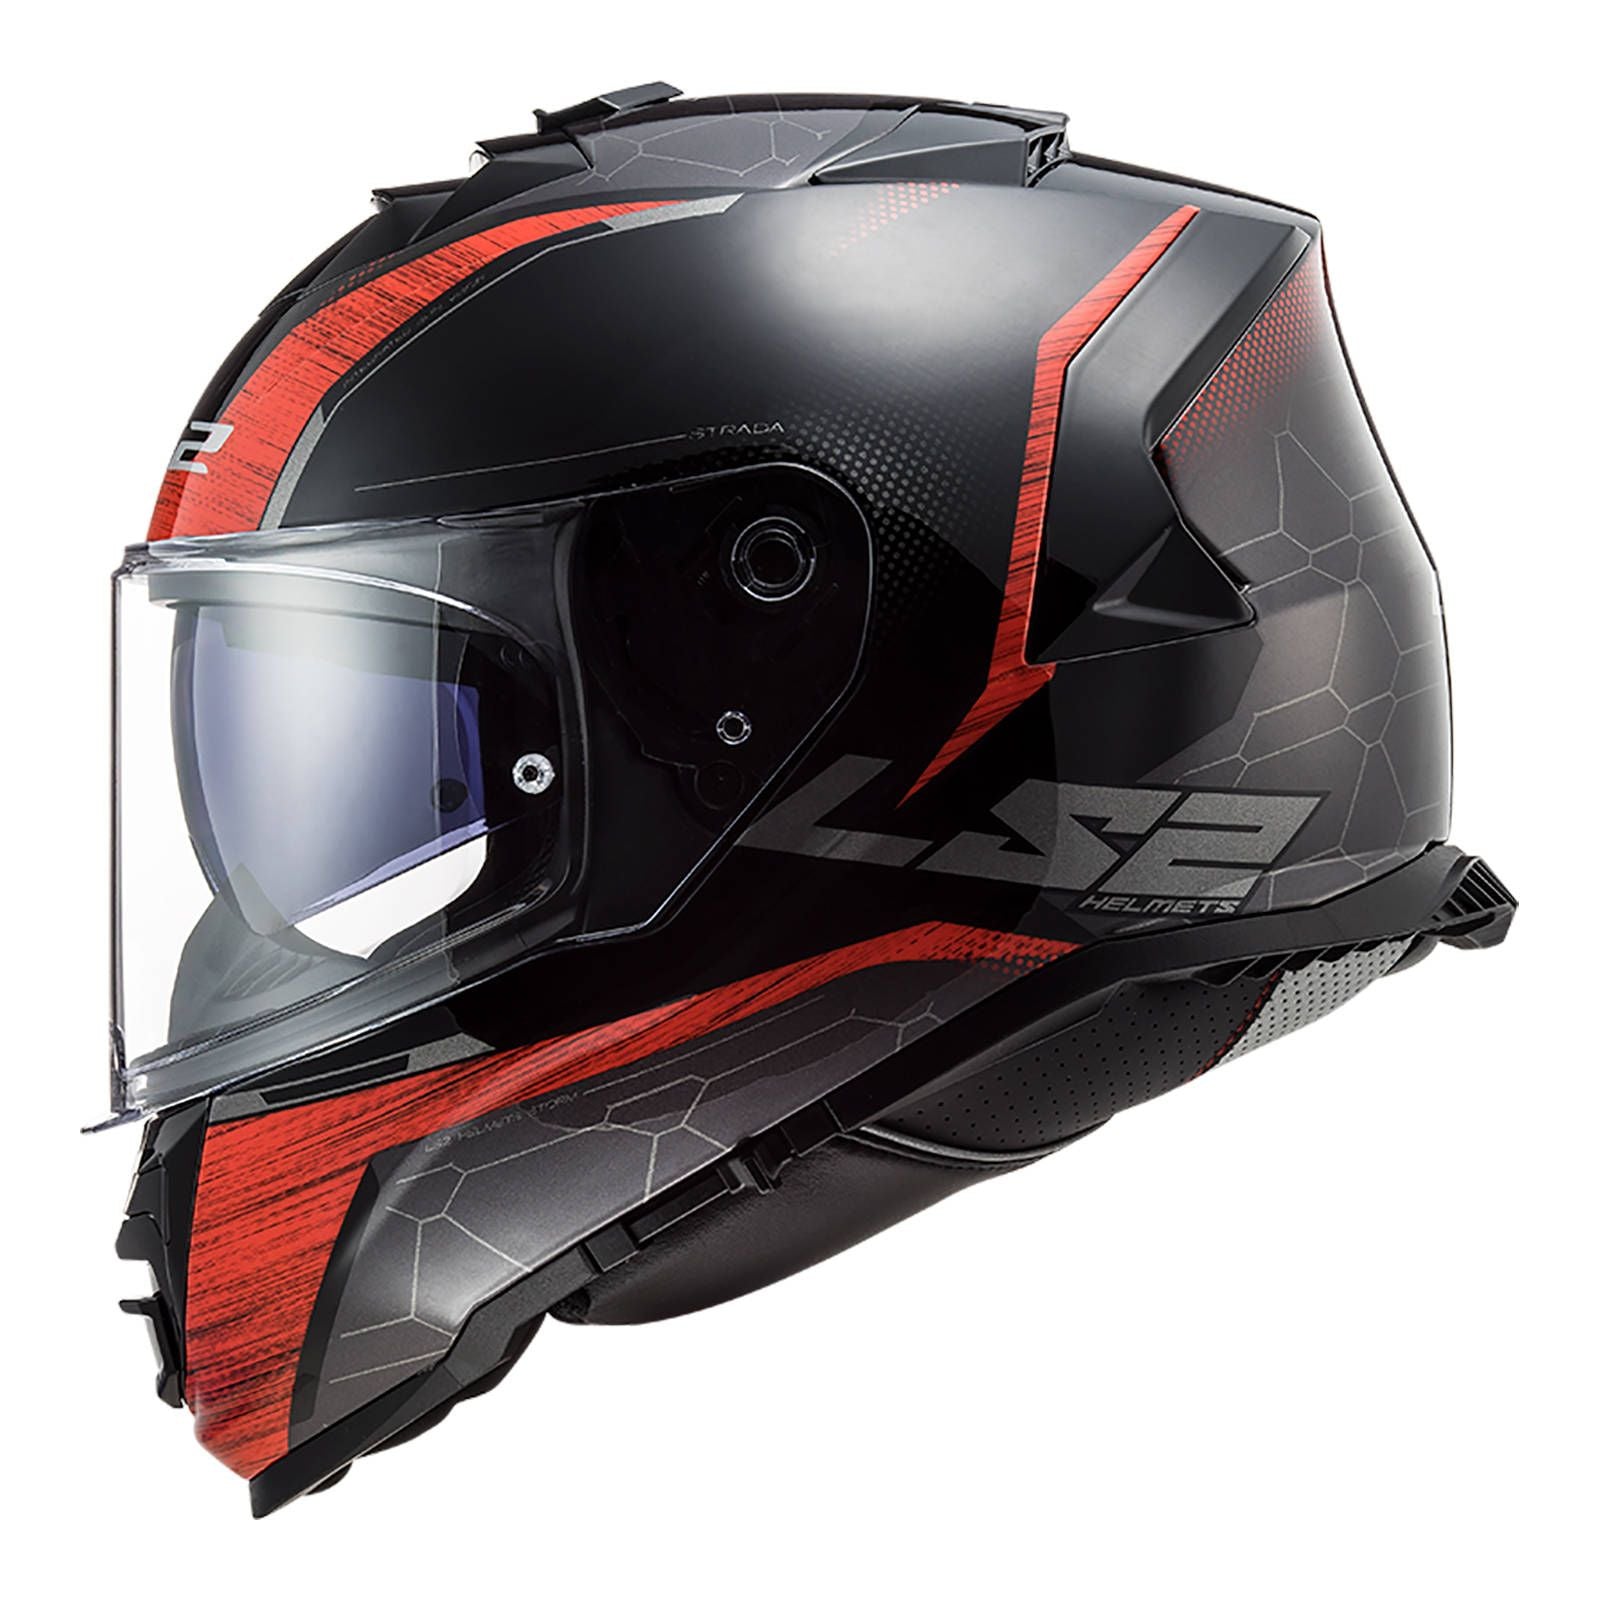 New LS2 FF800 Storm Classy Helmet - Black / Red (S) #LS2FF800CLASBKRS